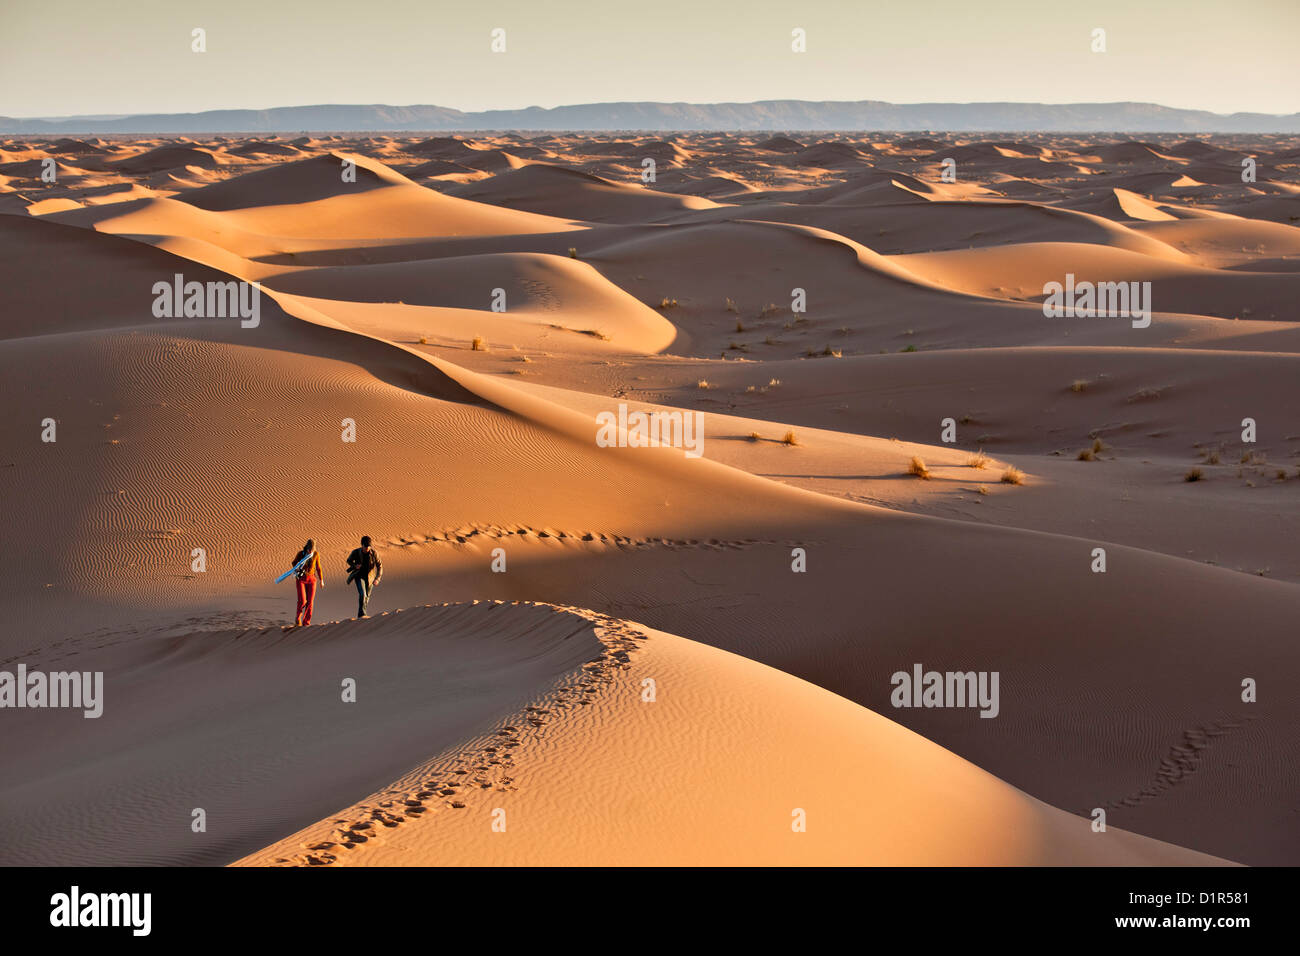 Le Maroc, M'Hamid, Erg Chigaga dunes de sable. Désert du Sahara. Les touristes sur dune de sable. Banque D'Images